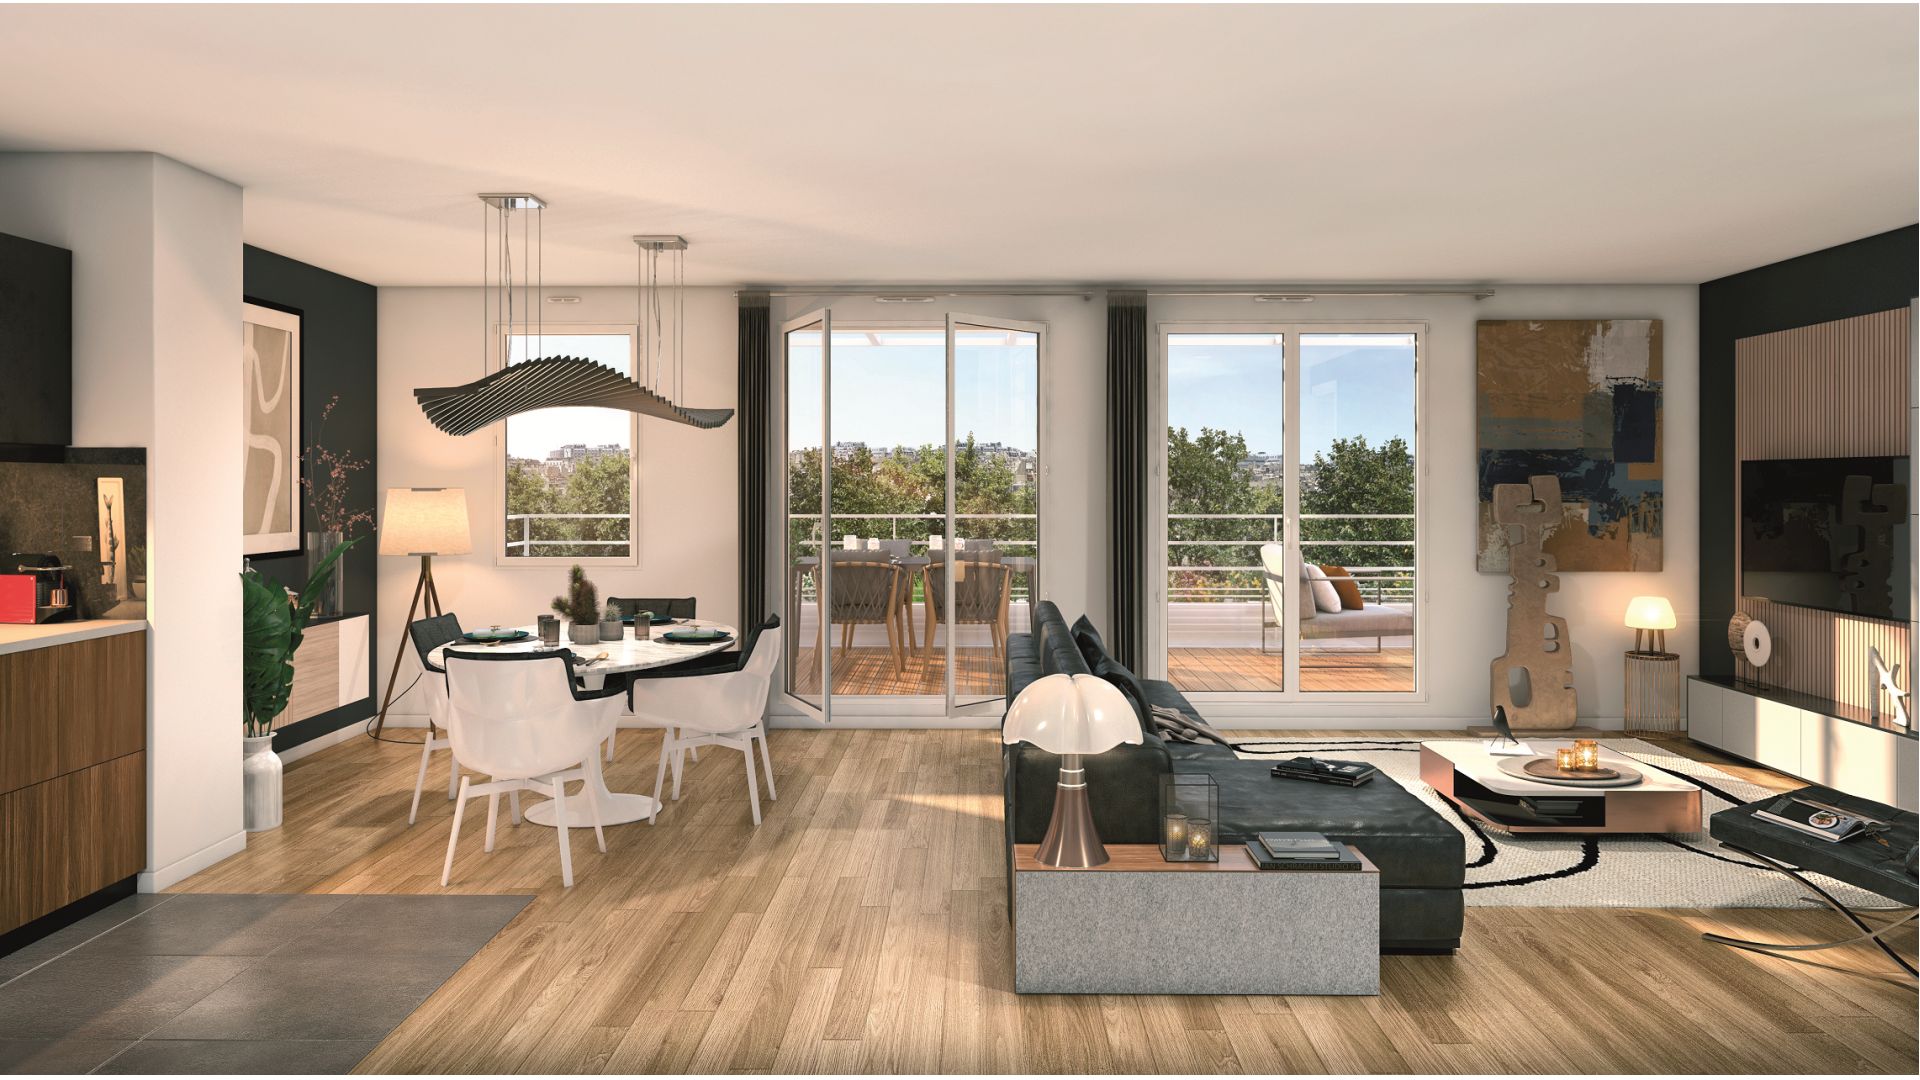 Greencity immobilier - achat appartements neufs du T2 au T5 - Résidence Villa Arty - 75020 Paris 20